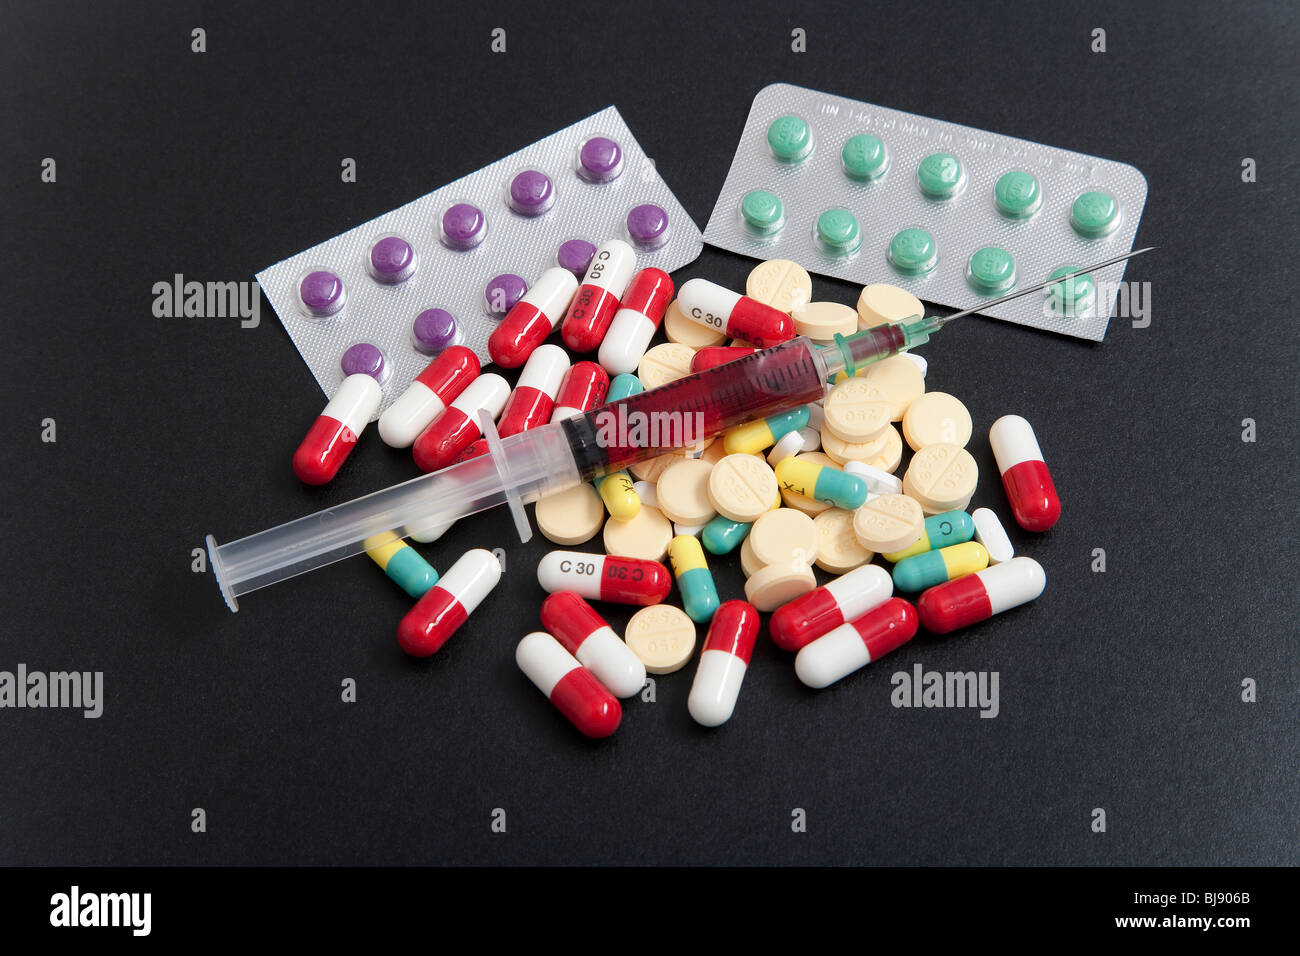 Medikament Paraphernalia equipment products oder Materialien und illegale Drogen Stockfoto